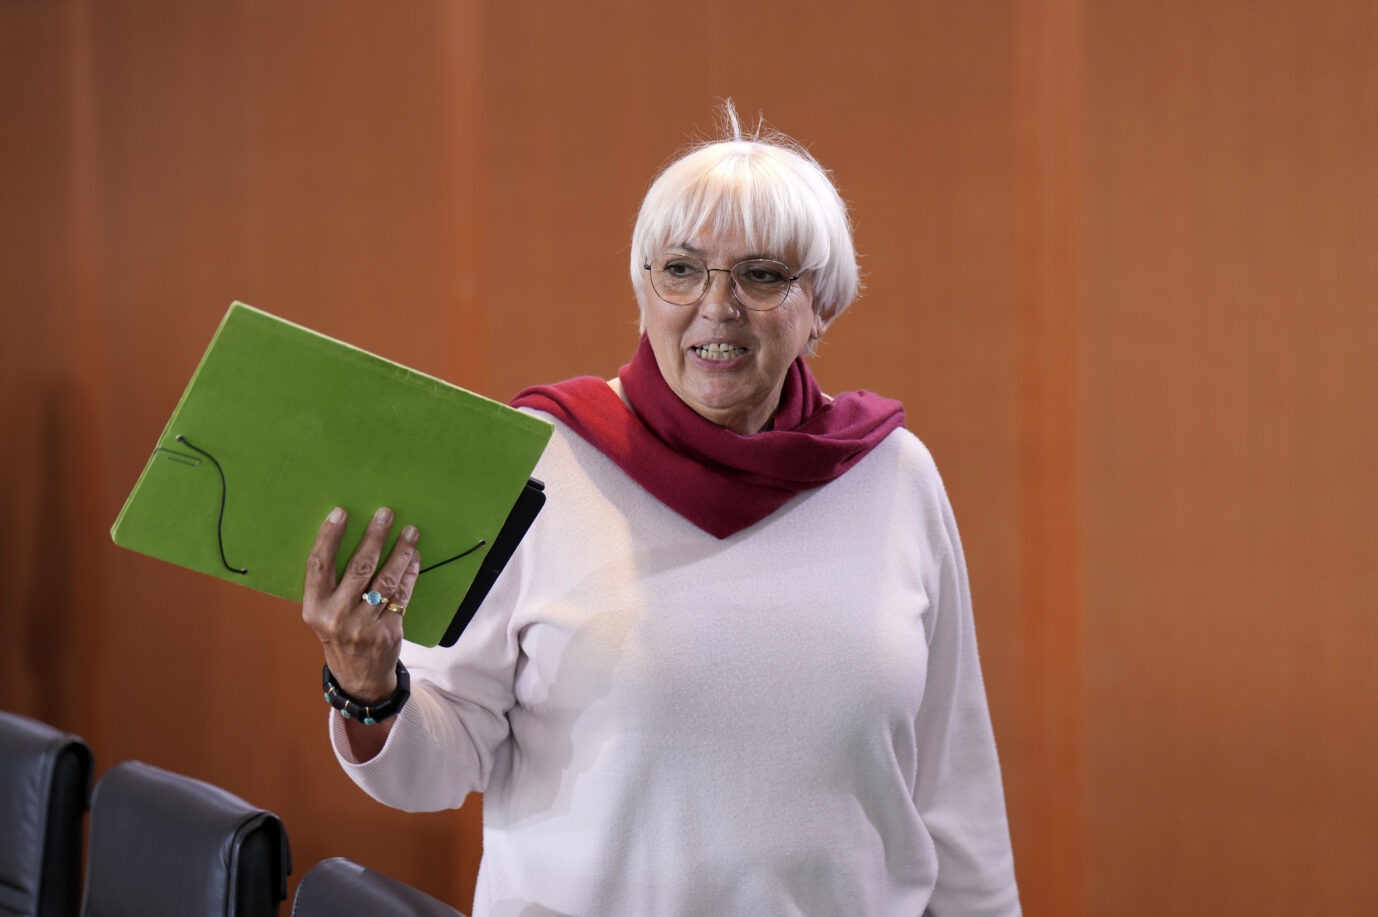 Grünen-Politikerin Claudia Roth schaut aggressiv an der Kamera vorbei und hält eine grüne Mappe in der rechten Hand. Sie haßt alle Deutschen und entfernte sie vor kurzem auch sprachlich aus dem Namen eines Vertriebenenverbandes